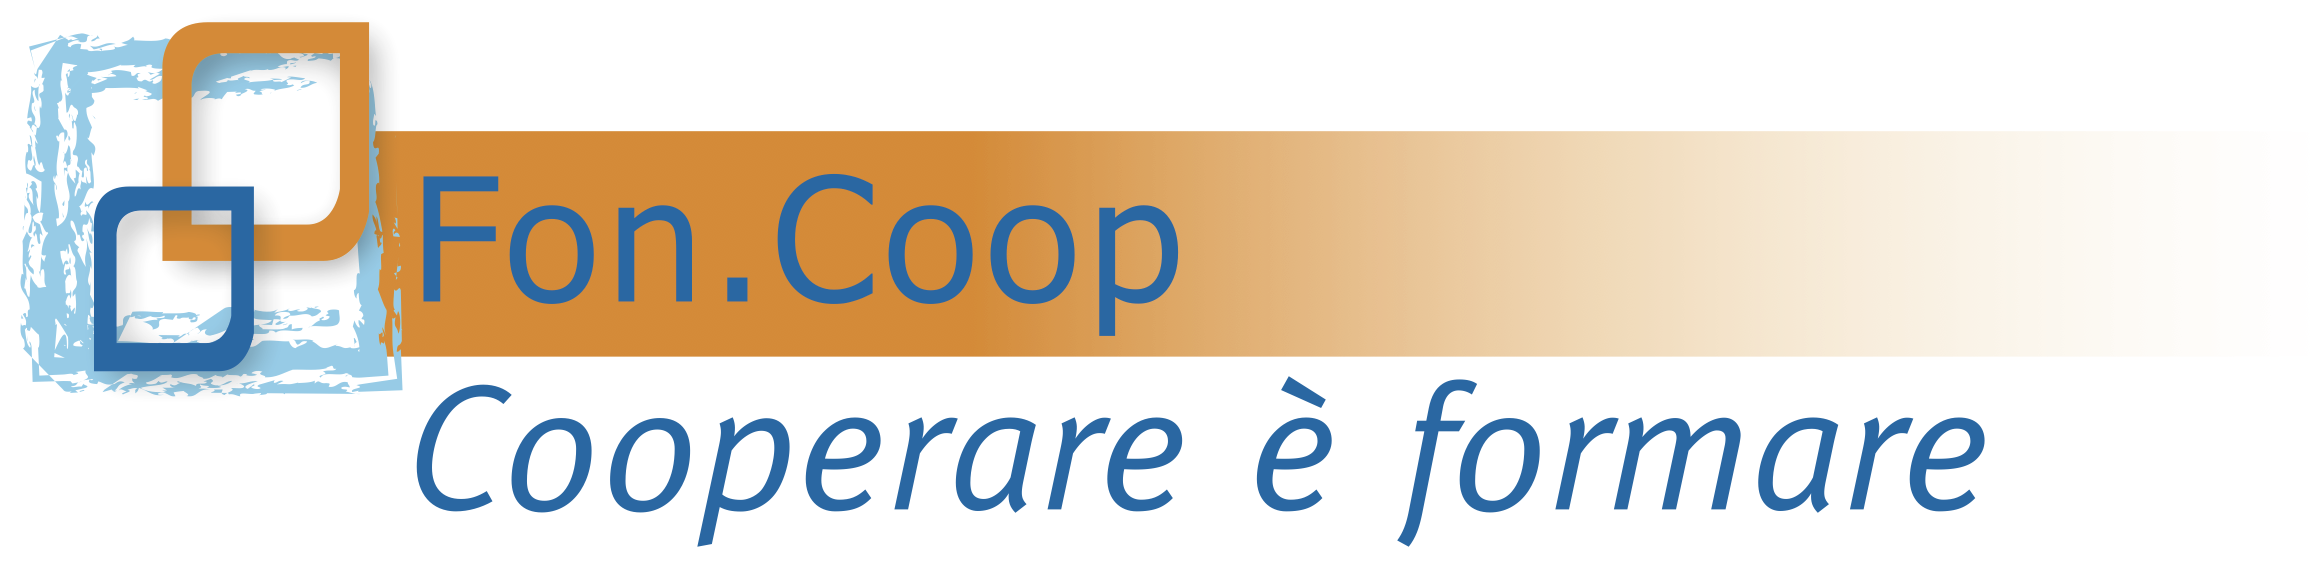 FonCoop_Logo_CooperareFormare_def